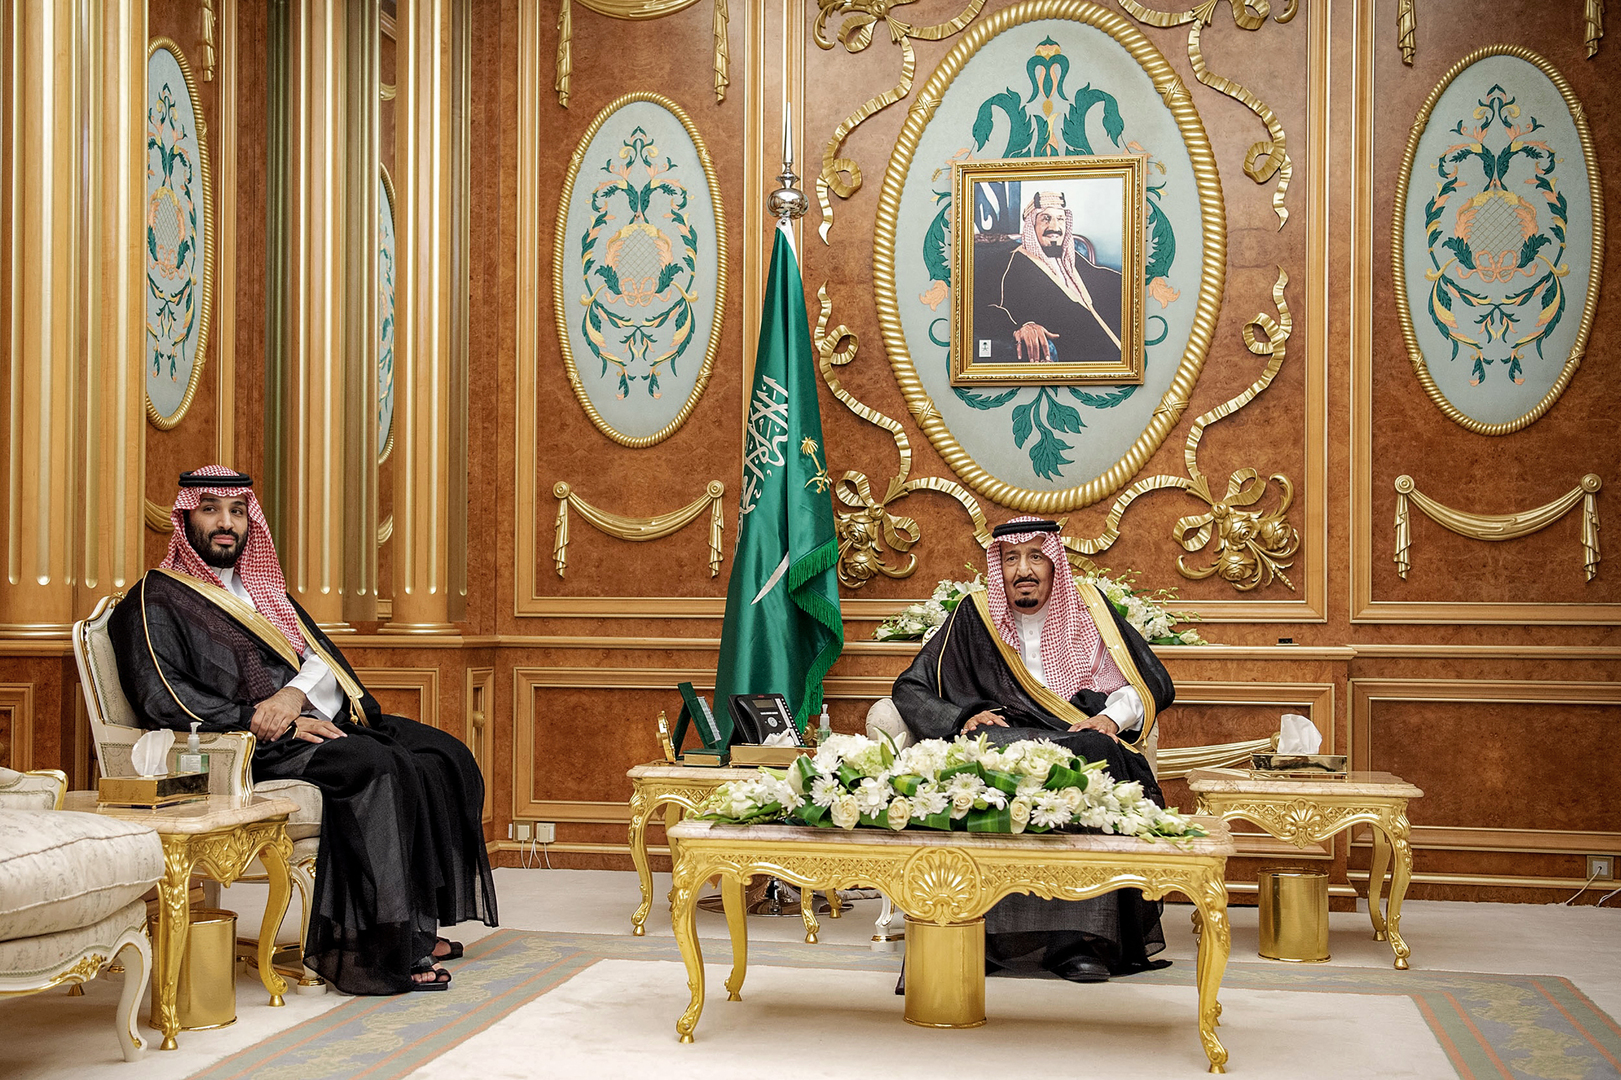 أمام الملك سلمان والأمير محمد.. أمراء سعوديون يؤدون القسم عقب تعيينهم في مناصبهم الجديدة (فيديو+صور)